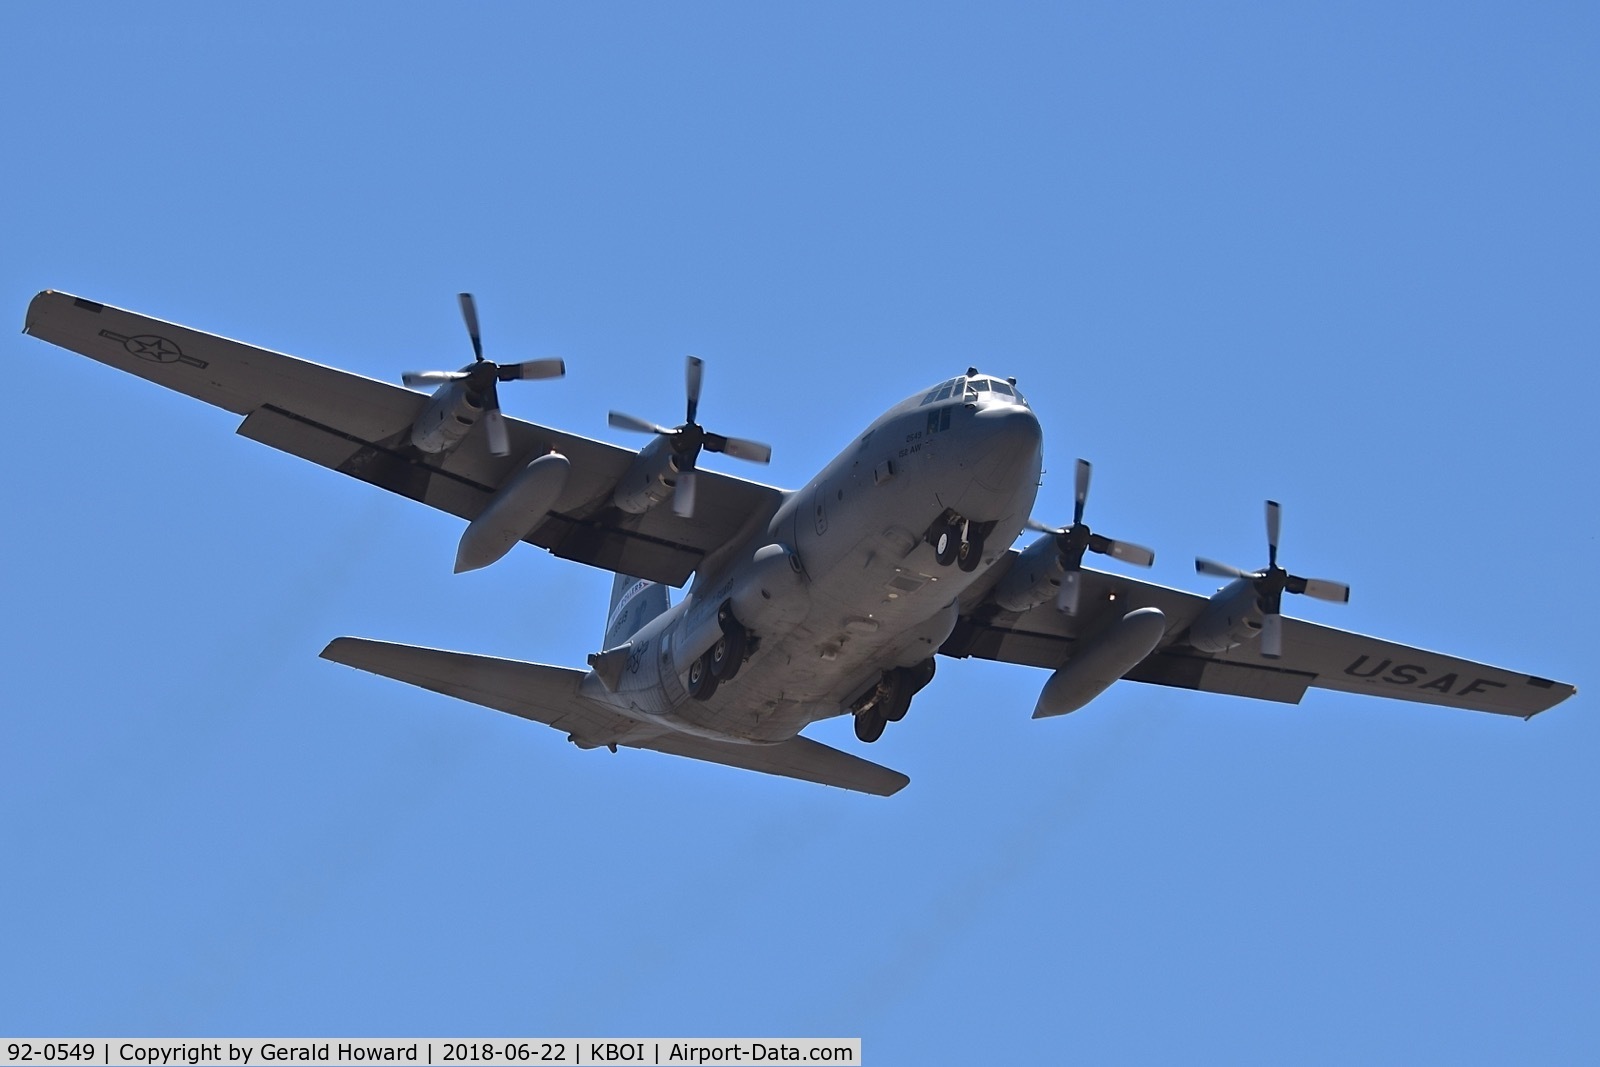 92-0549, 1992 Lockheed C-130H Hercules C/N 382-5337, Landing RWY 28L.  152nd AW, Nevada ANG, Reno, NV.